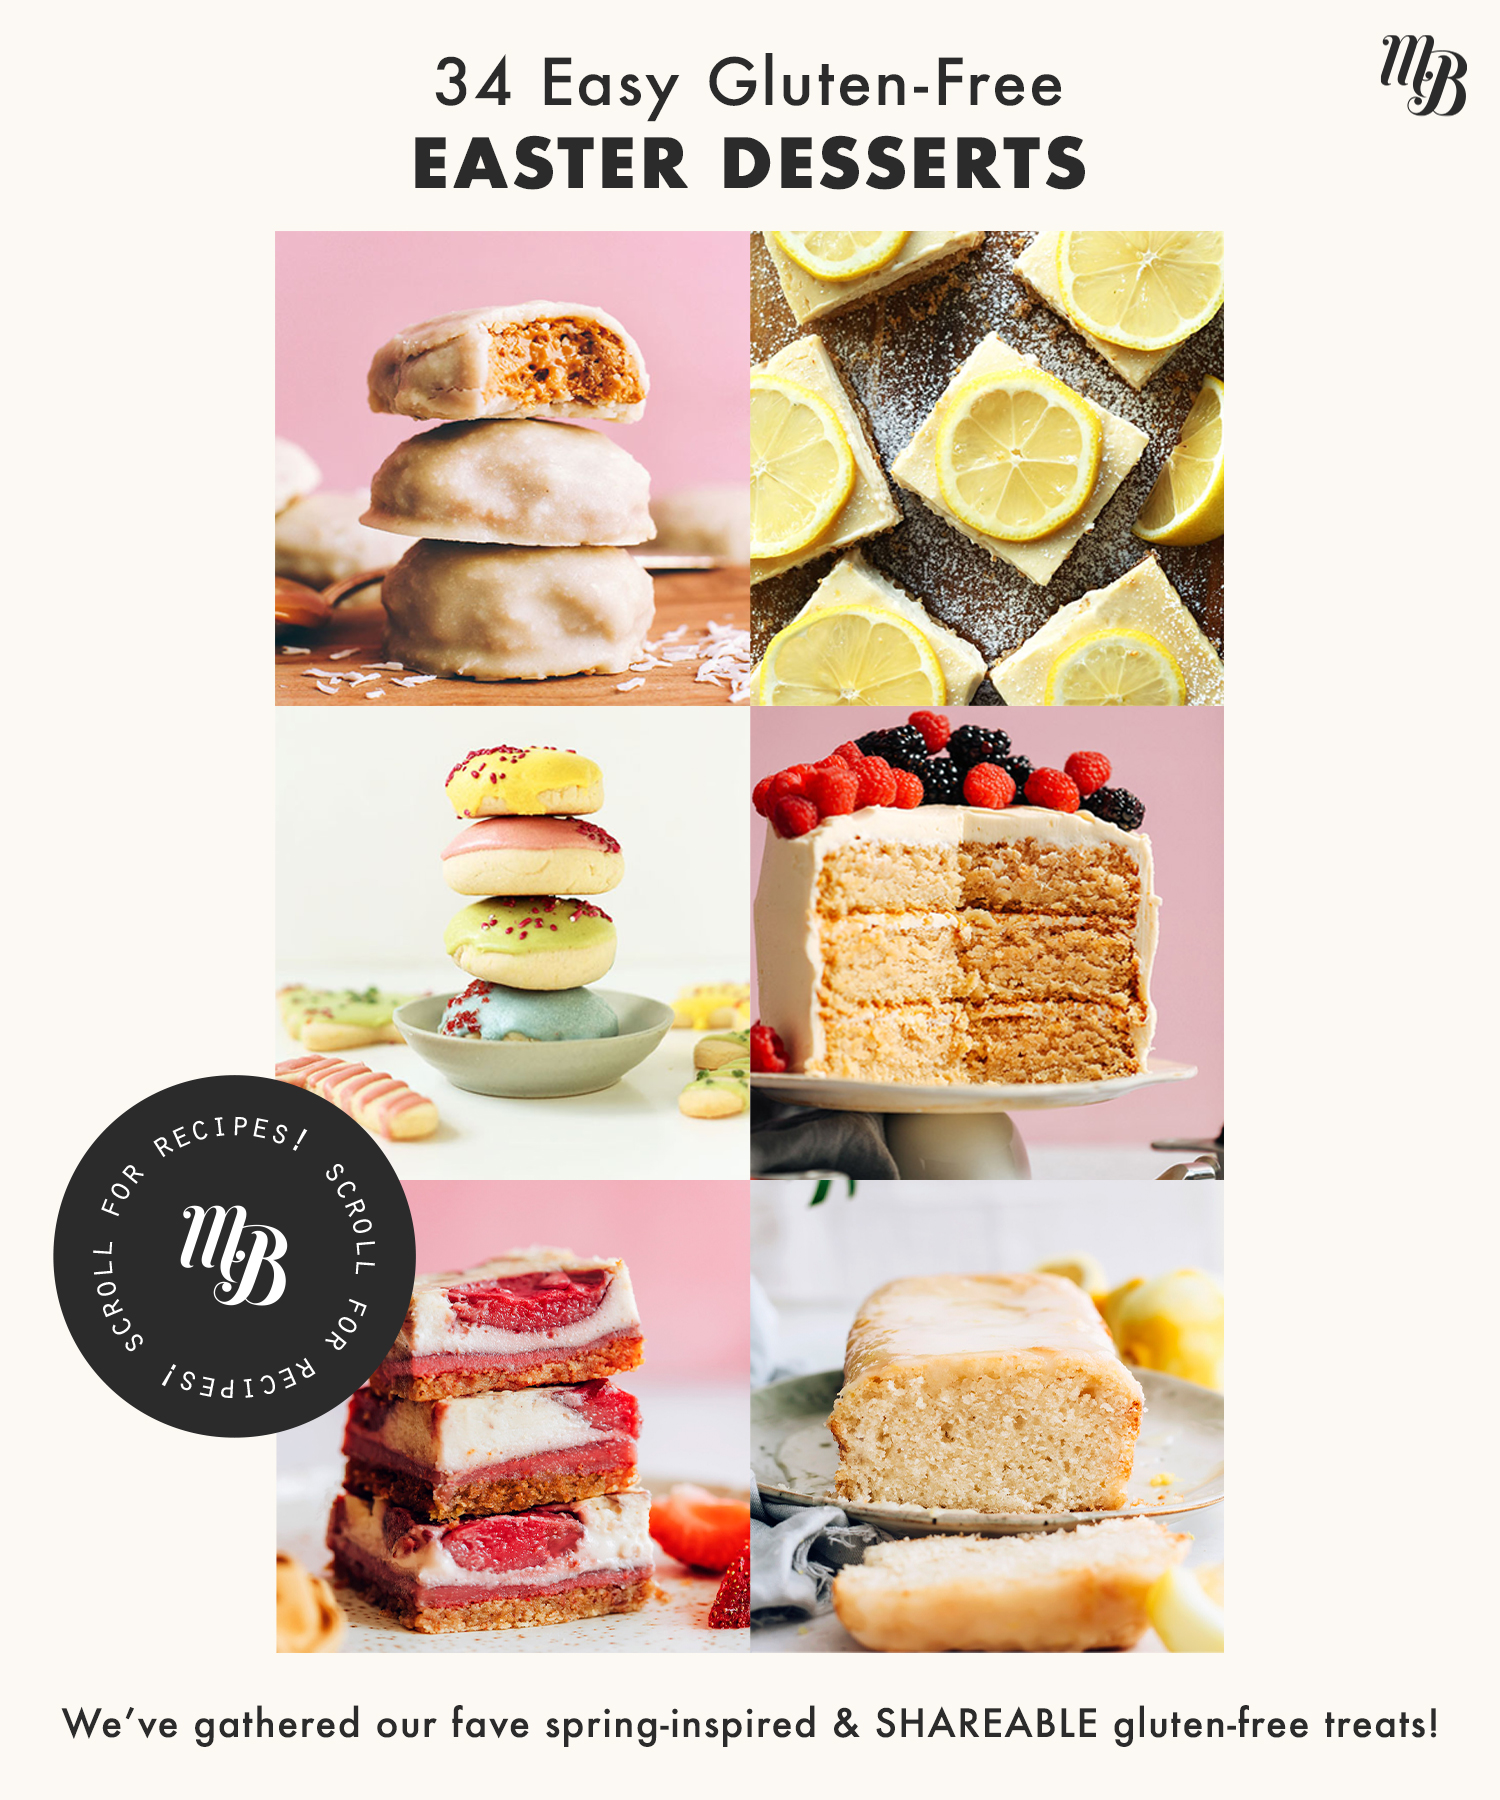 Assortment of gluten-free Easter desserts